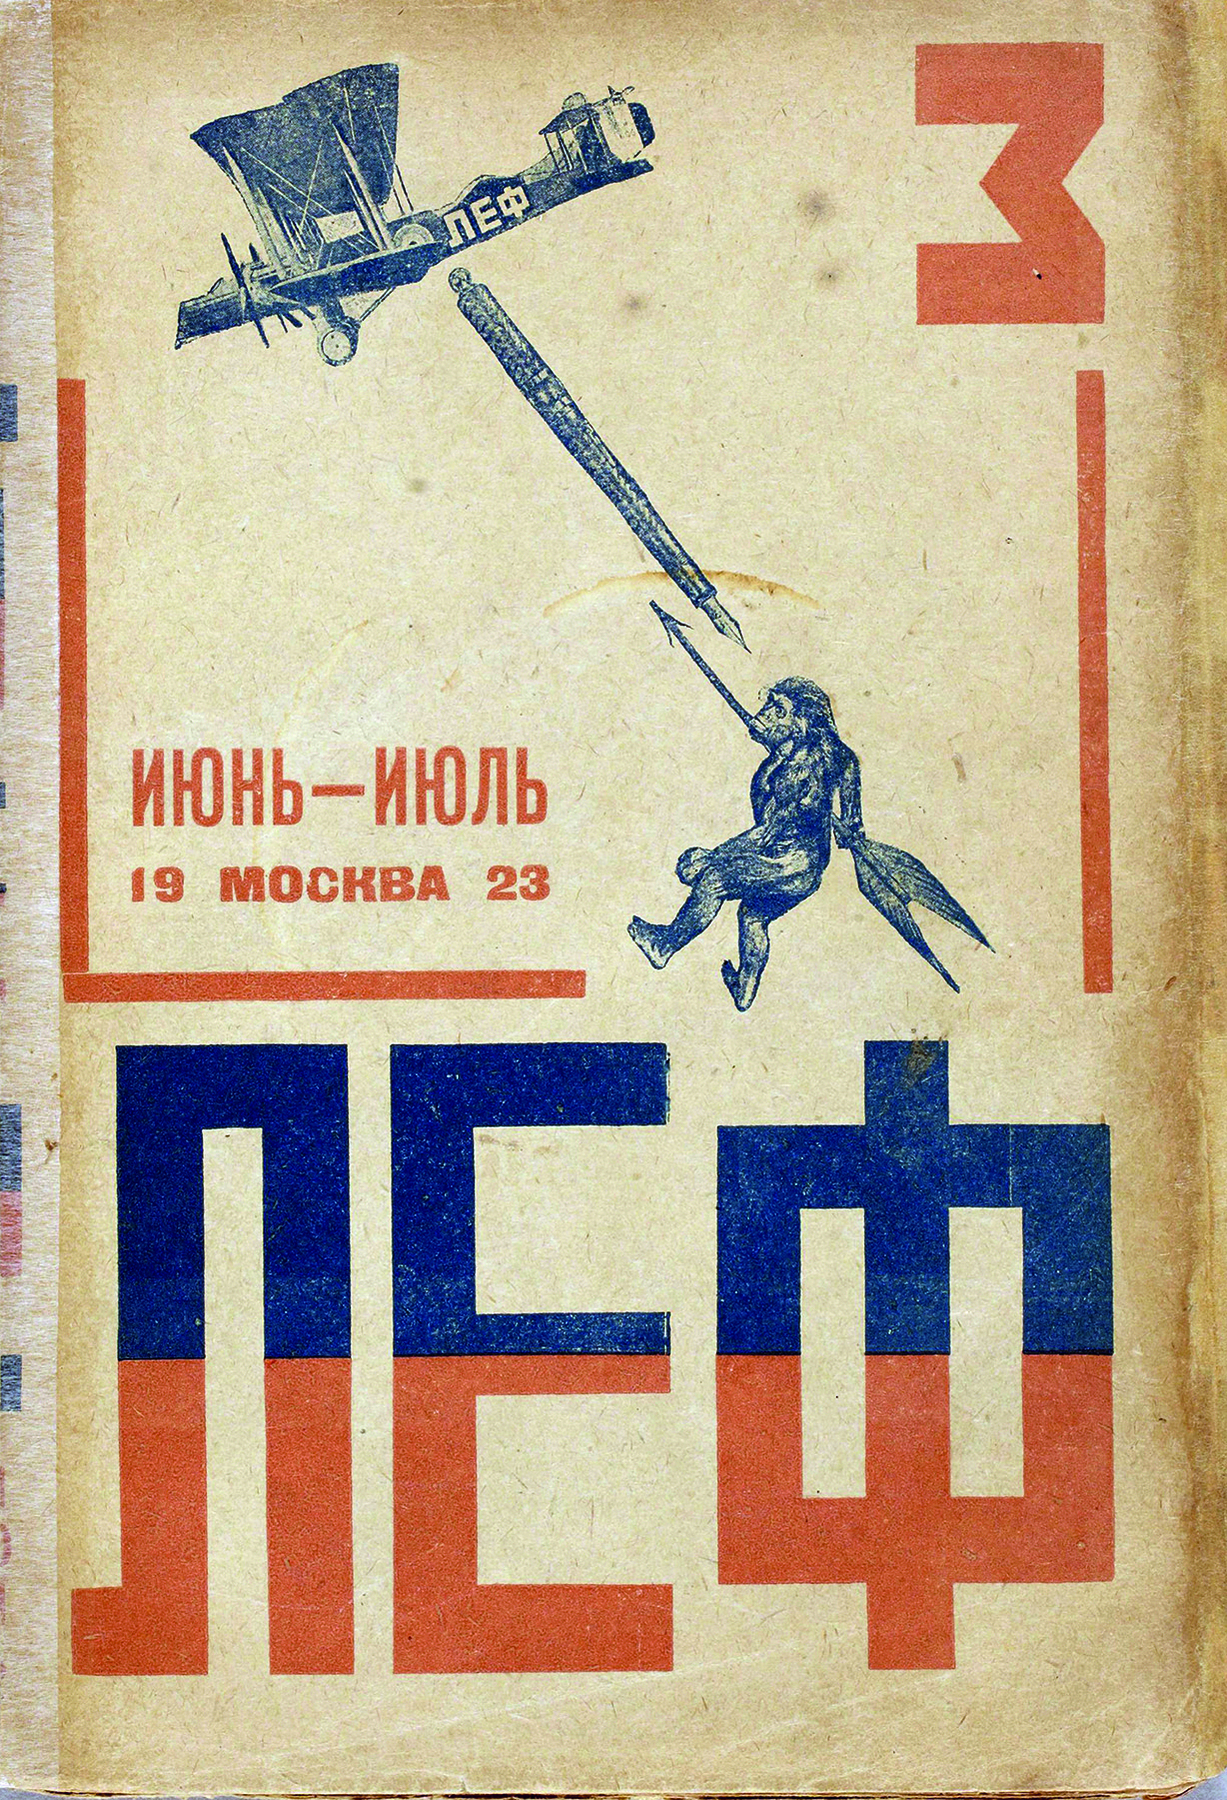 Capa de revista. Na parte inferior há o título da revista em russo. Na parte superior, há a ilustração de um avião em que está inscrito o título da revista. O avião lança uma caneta-tinteiro na direção de um gorila, que está no ar segurando uma flecha.